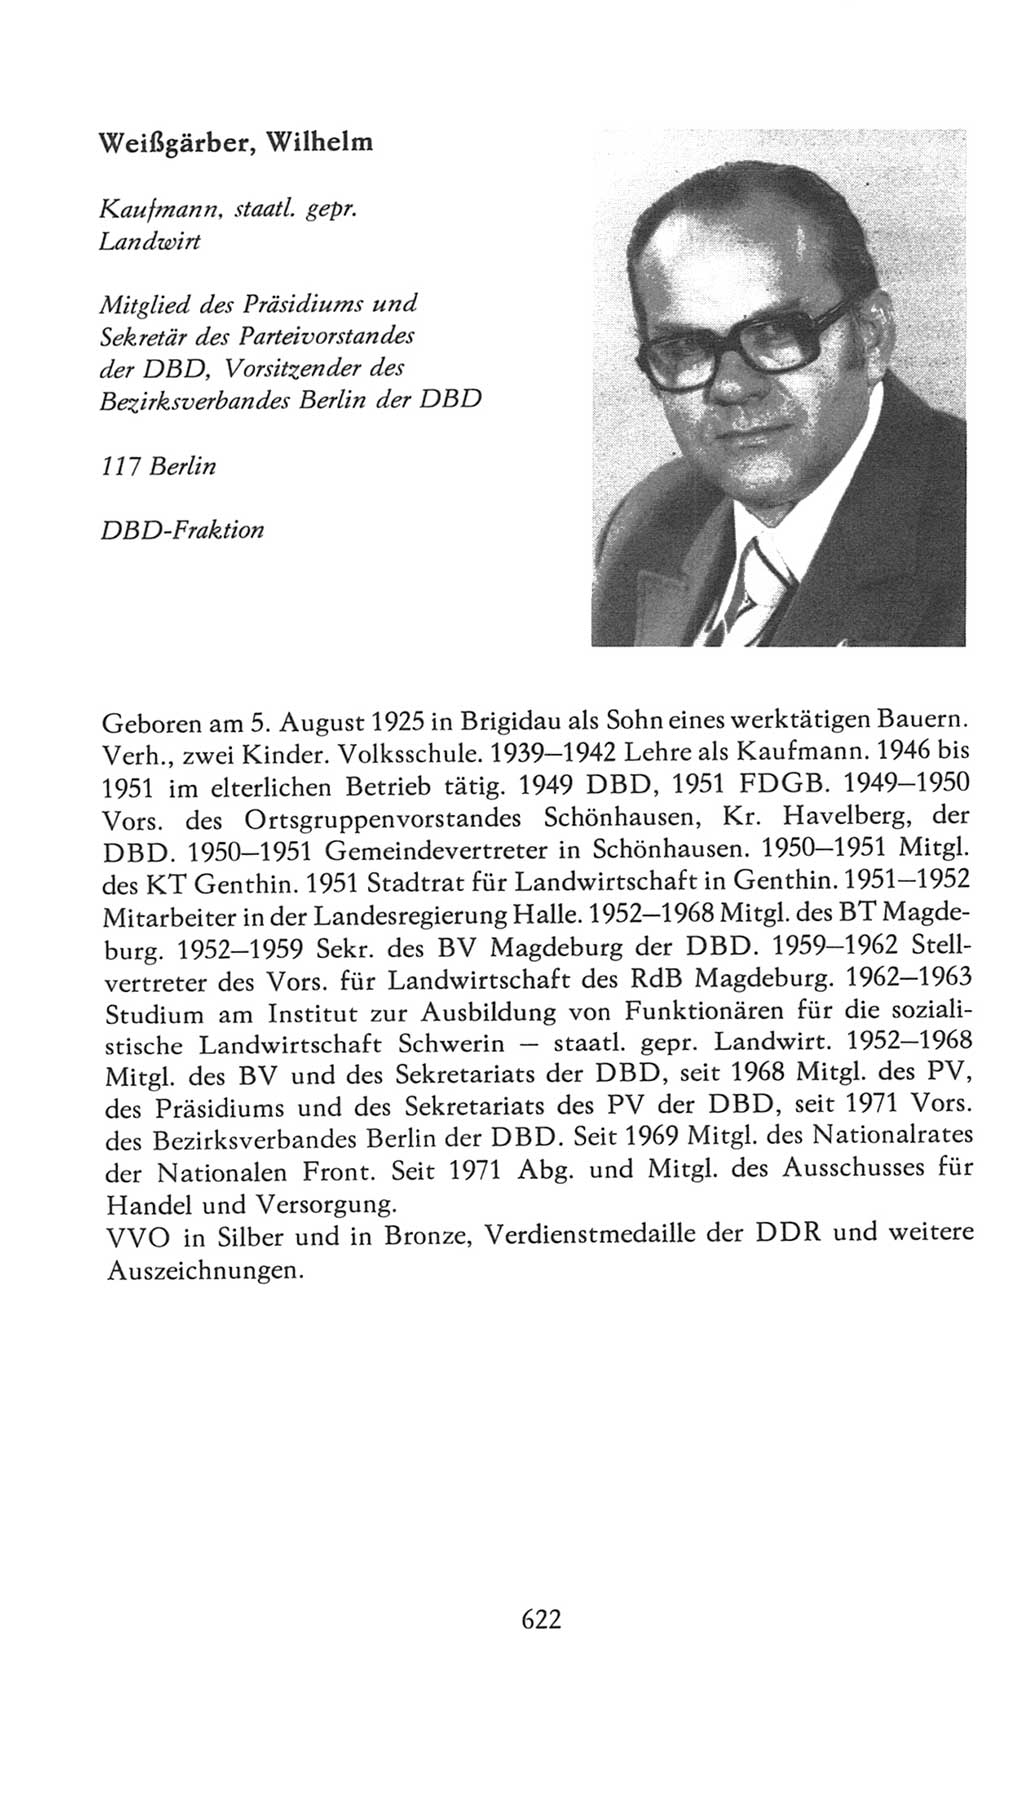 Volkskammer (VK) der Deutschen Demokratischen Republik (DDR), 7. Wahlperiode 1976-1981, Seite 622 (VK. DDR 7. WP. 1976-1981, S. 622)